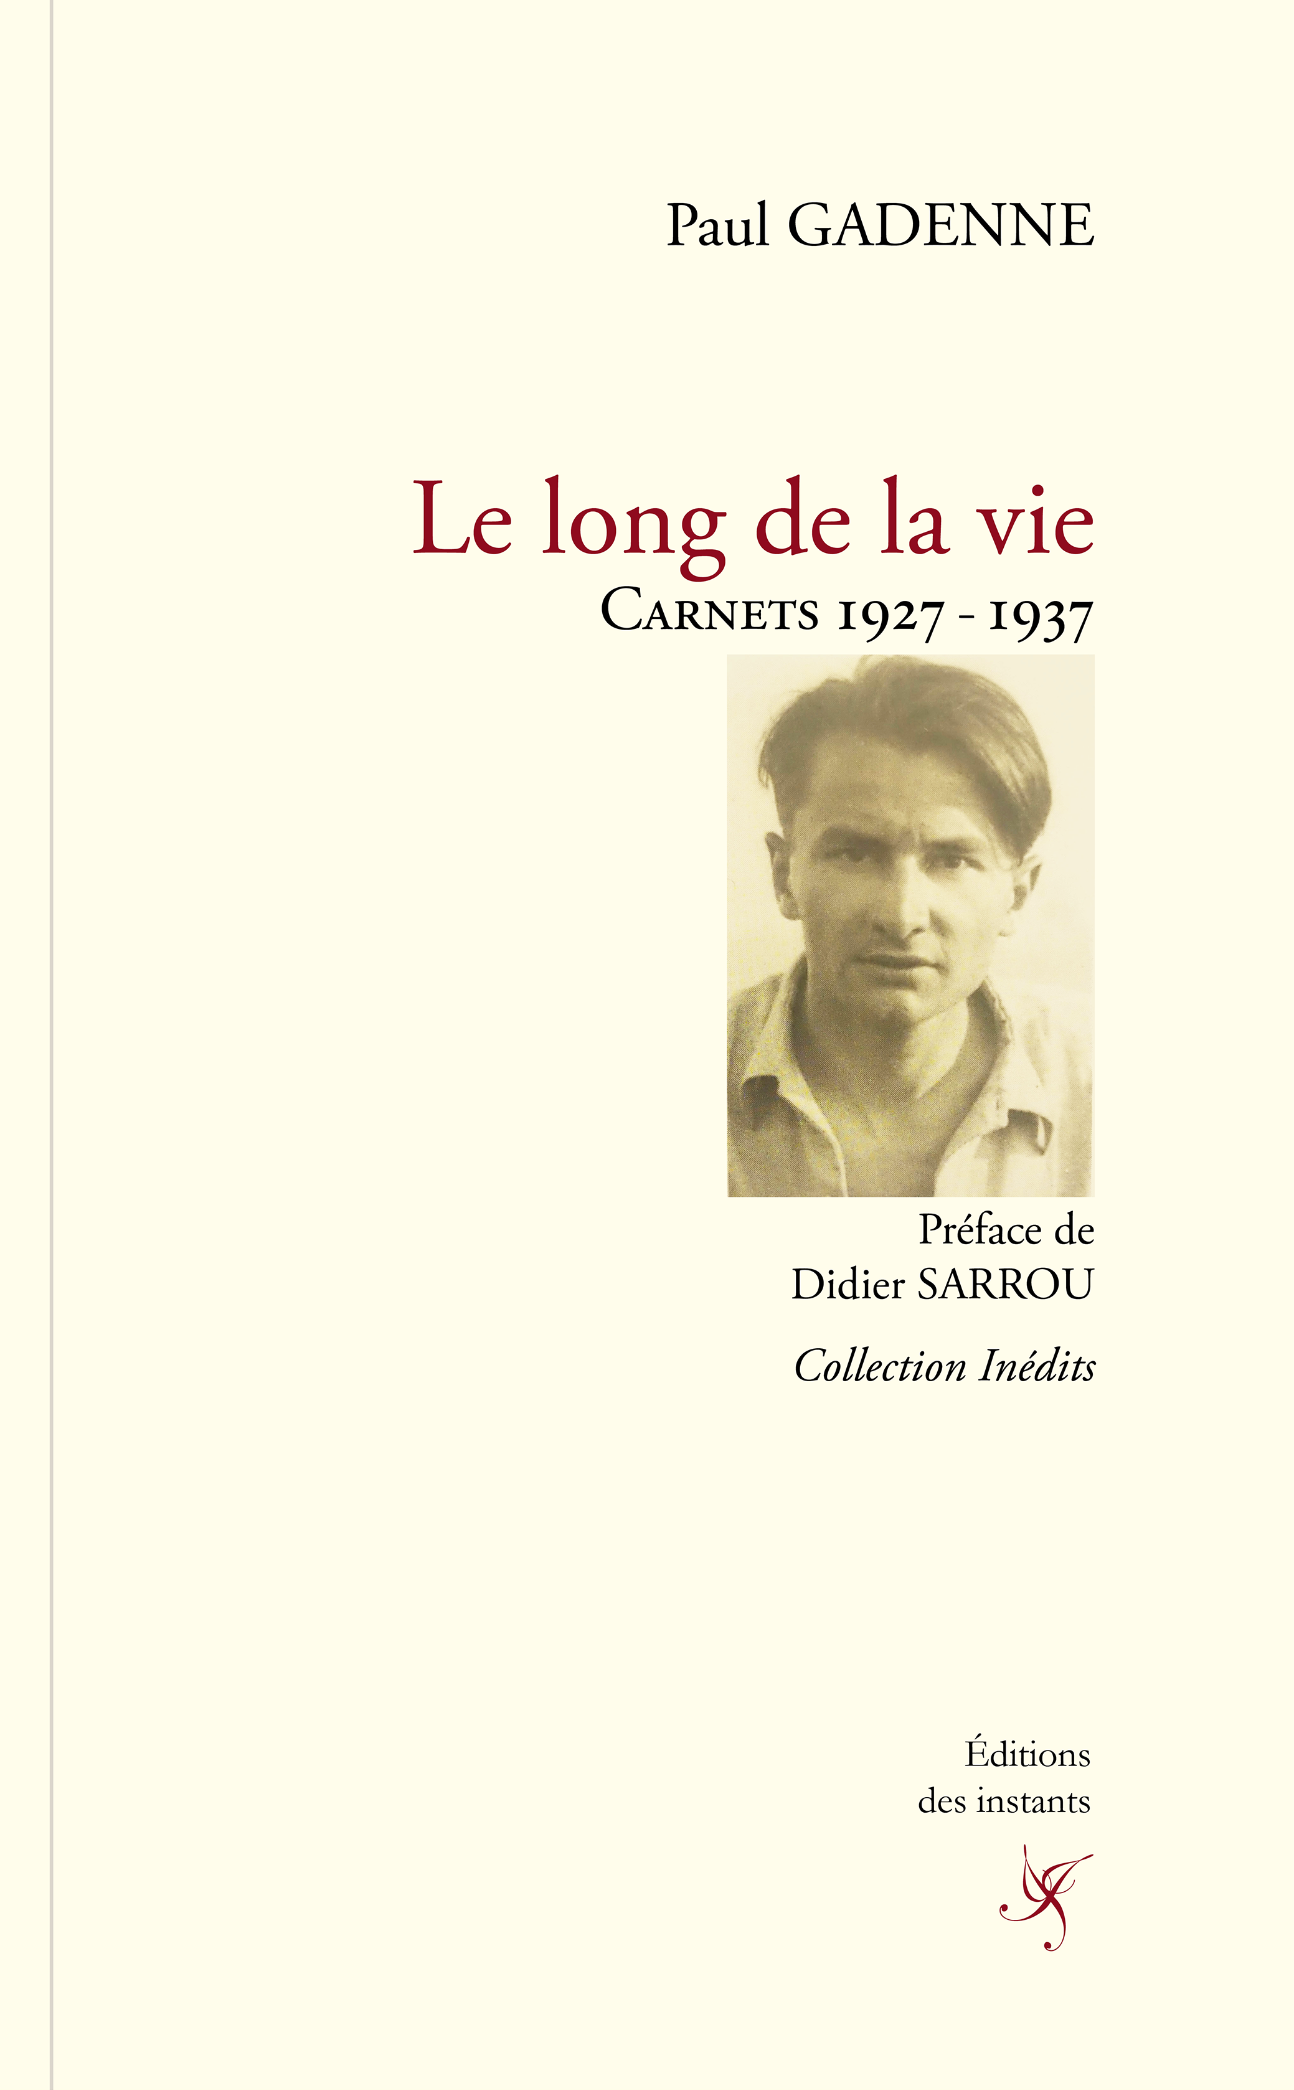 Paul Gadenne, Le long de la vie. Carnets 1927-1937